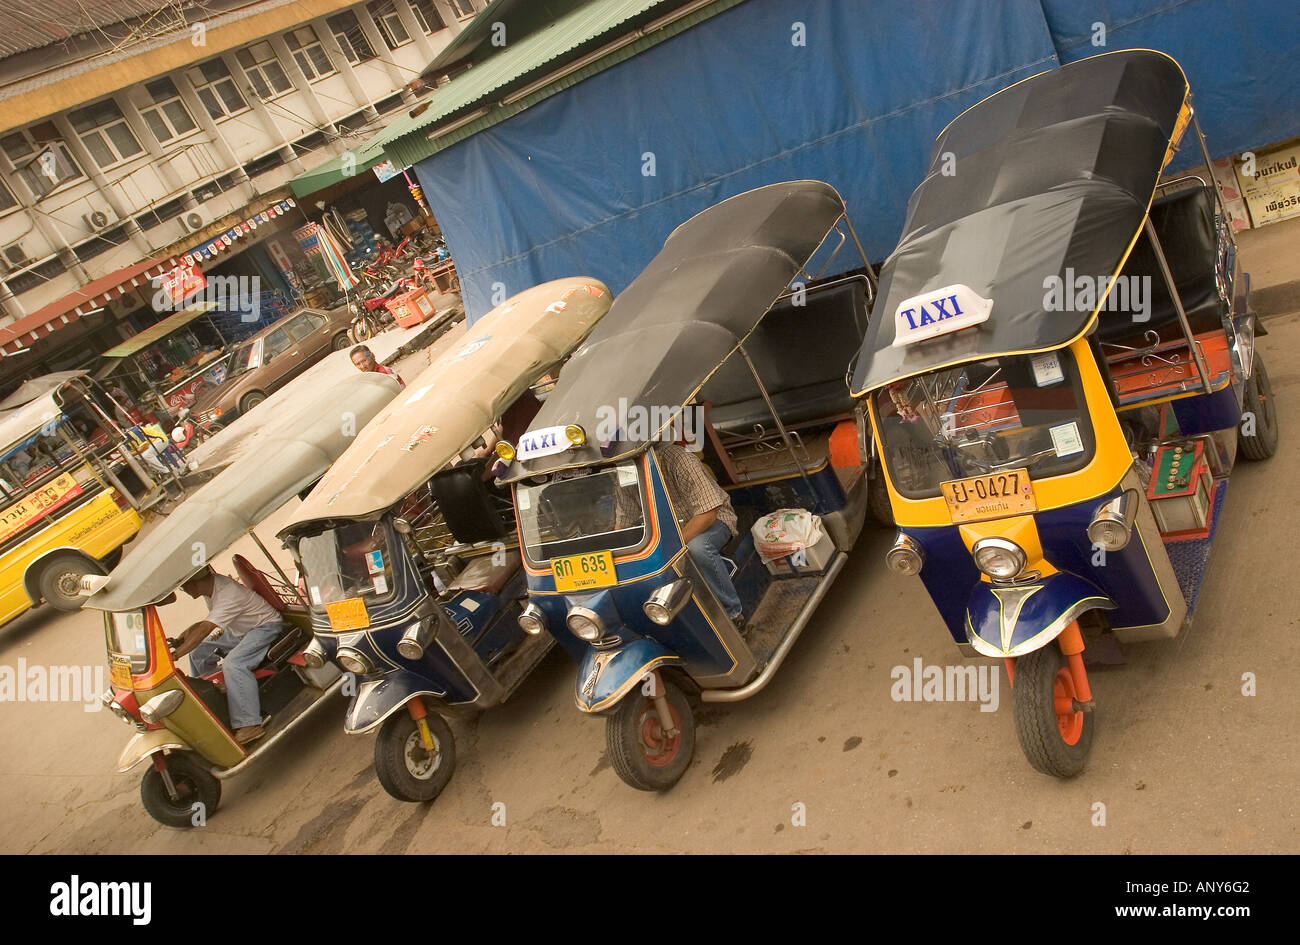 Asia, Thailand, Khon Kaen, tuk tuk taxi transportation. Stock Photo